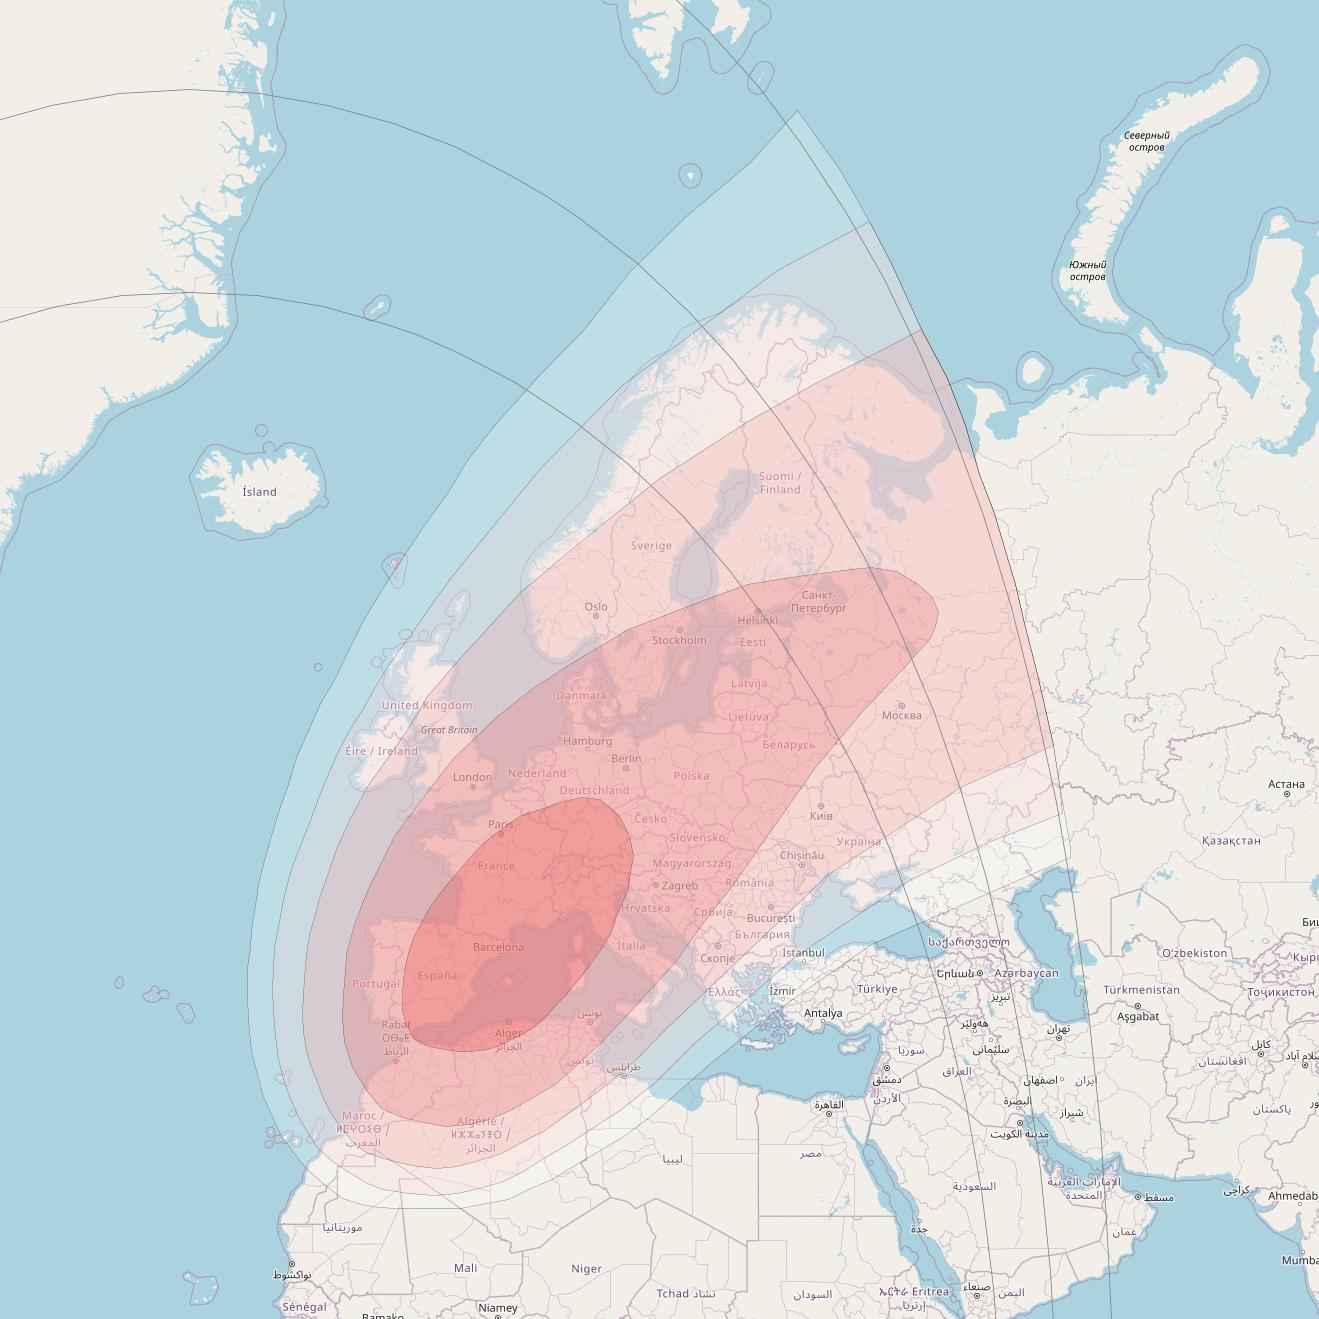 Intelsat 905 at 24° W downlink Ku-band Spot 2 Beam coverage map